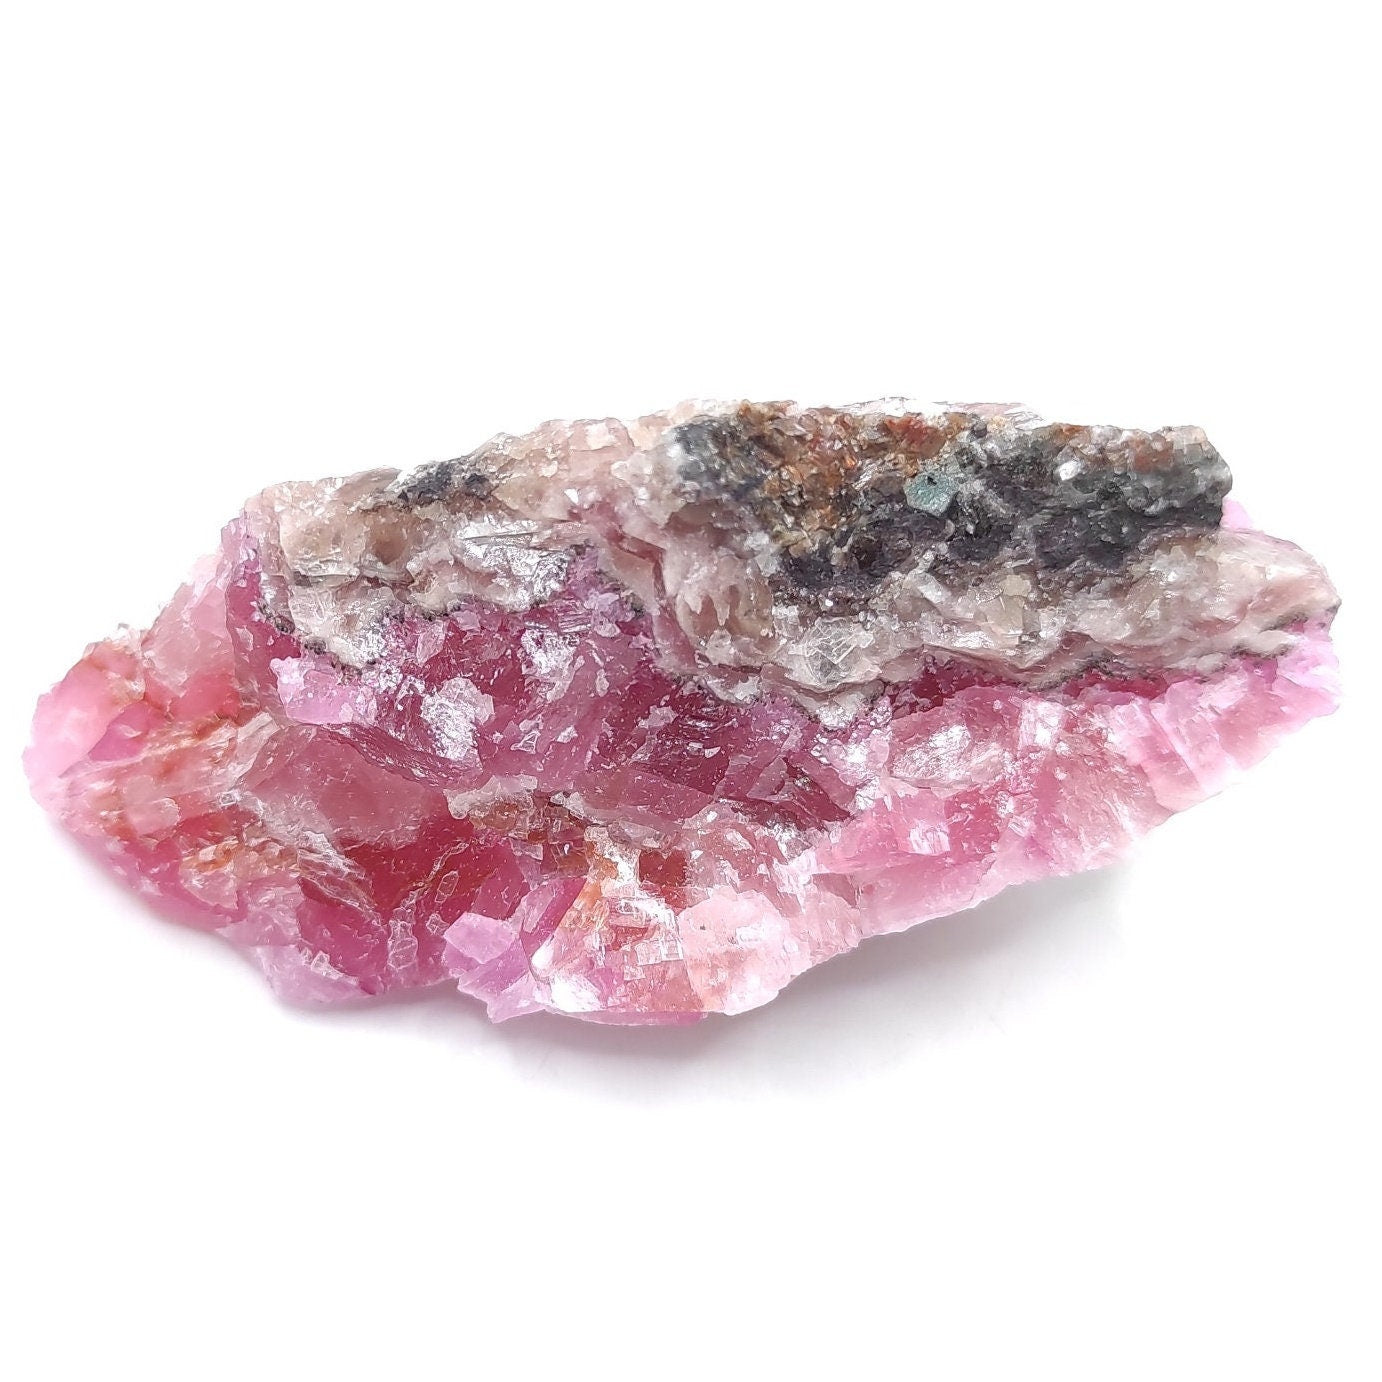 40g Cobalto Calcite - Pink Cobalt Calcite from Bou Azzer, Morocco - Salrose Stone - Cobaltocalcite Mineral Specimen - Pink Calcite Crystal